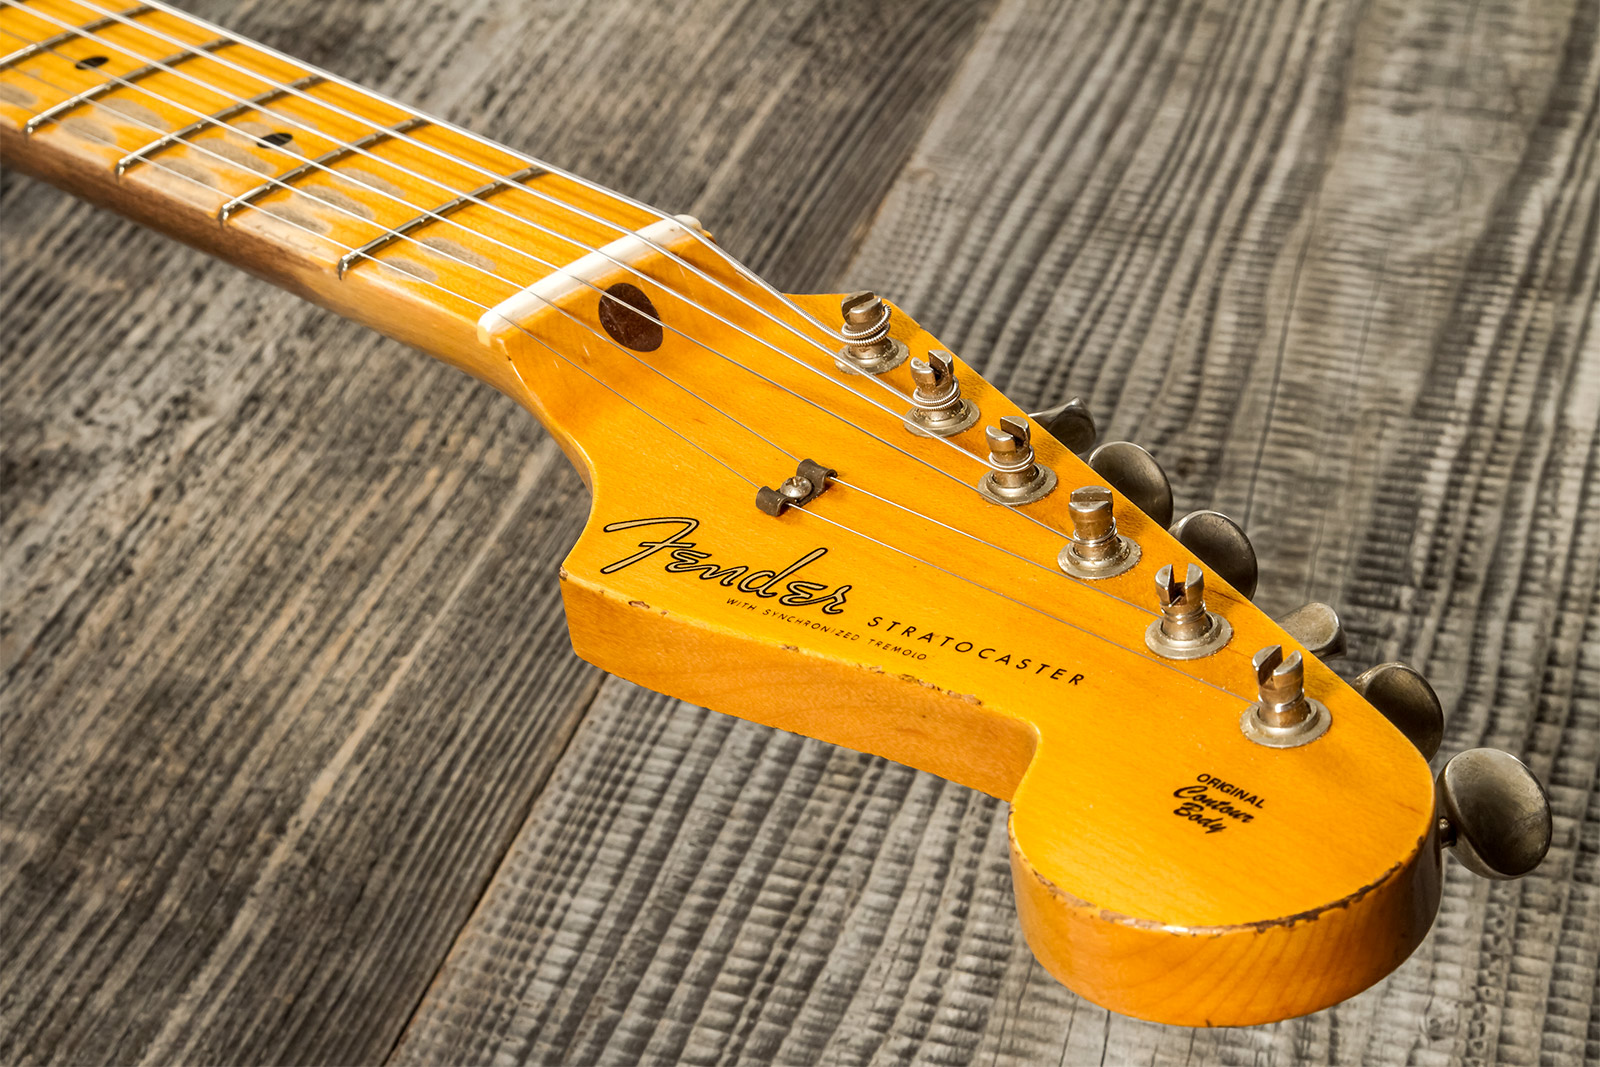 Fender Custom Shop Strat 1957 3s Trem Mn #cz571791 - Relic Wide Fade 2-color Sunburst - E-Gitarre in Str-Form - Variation 8